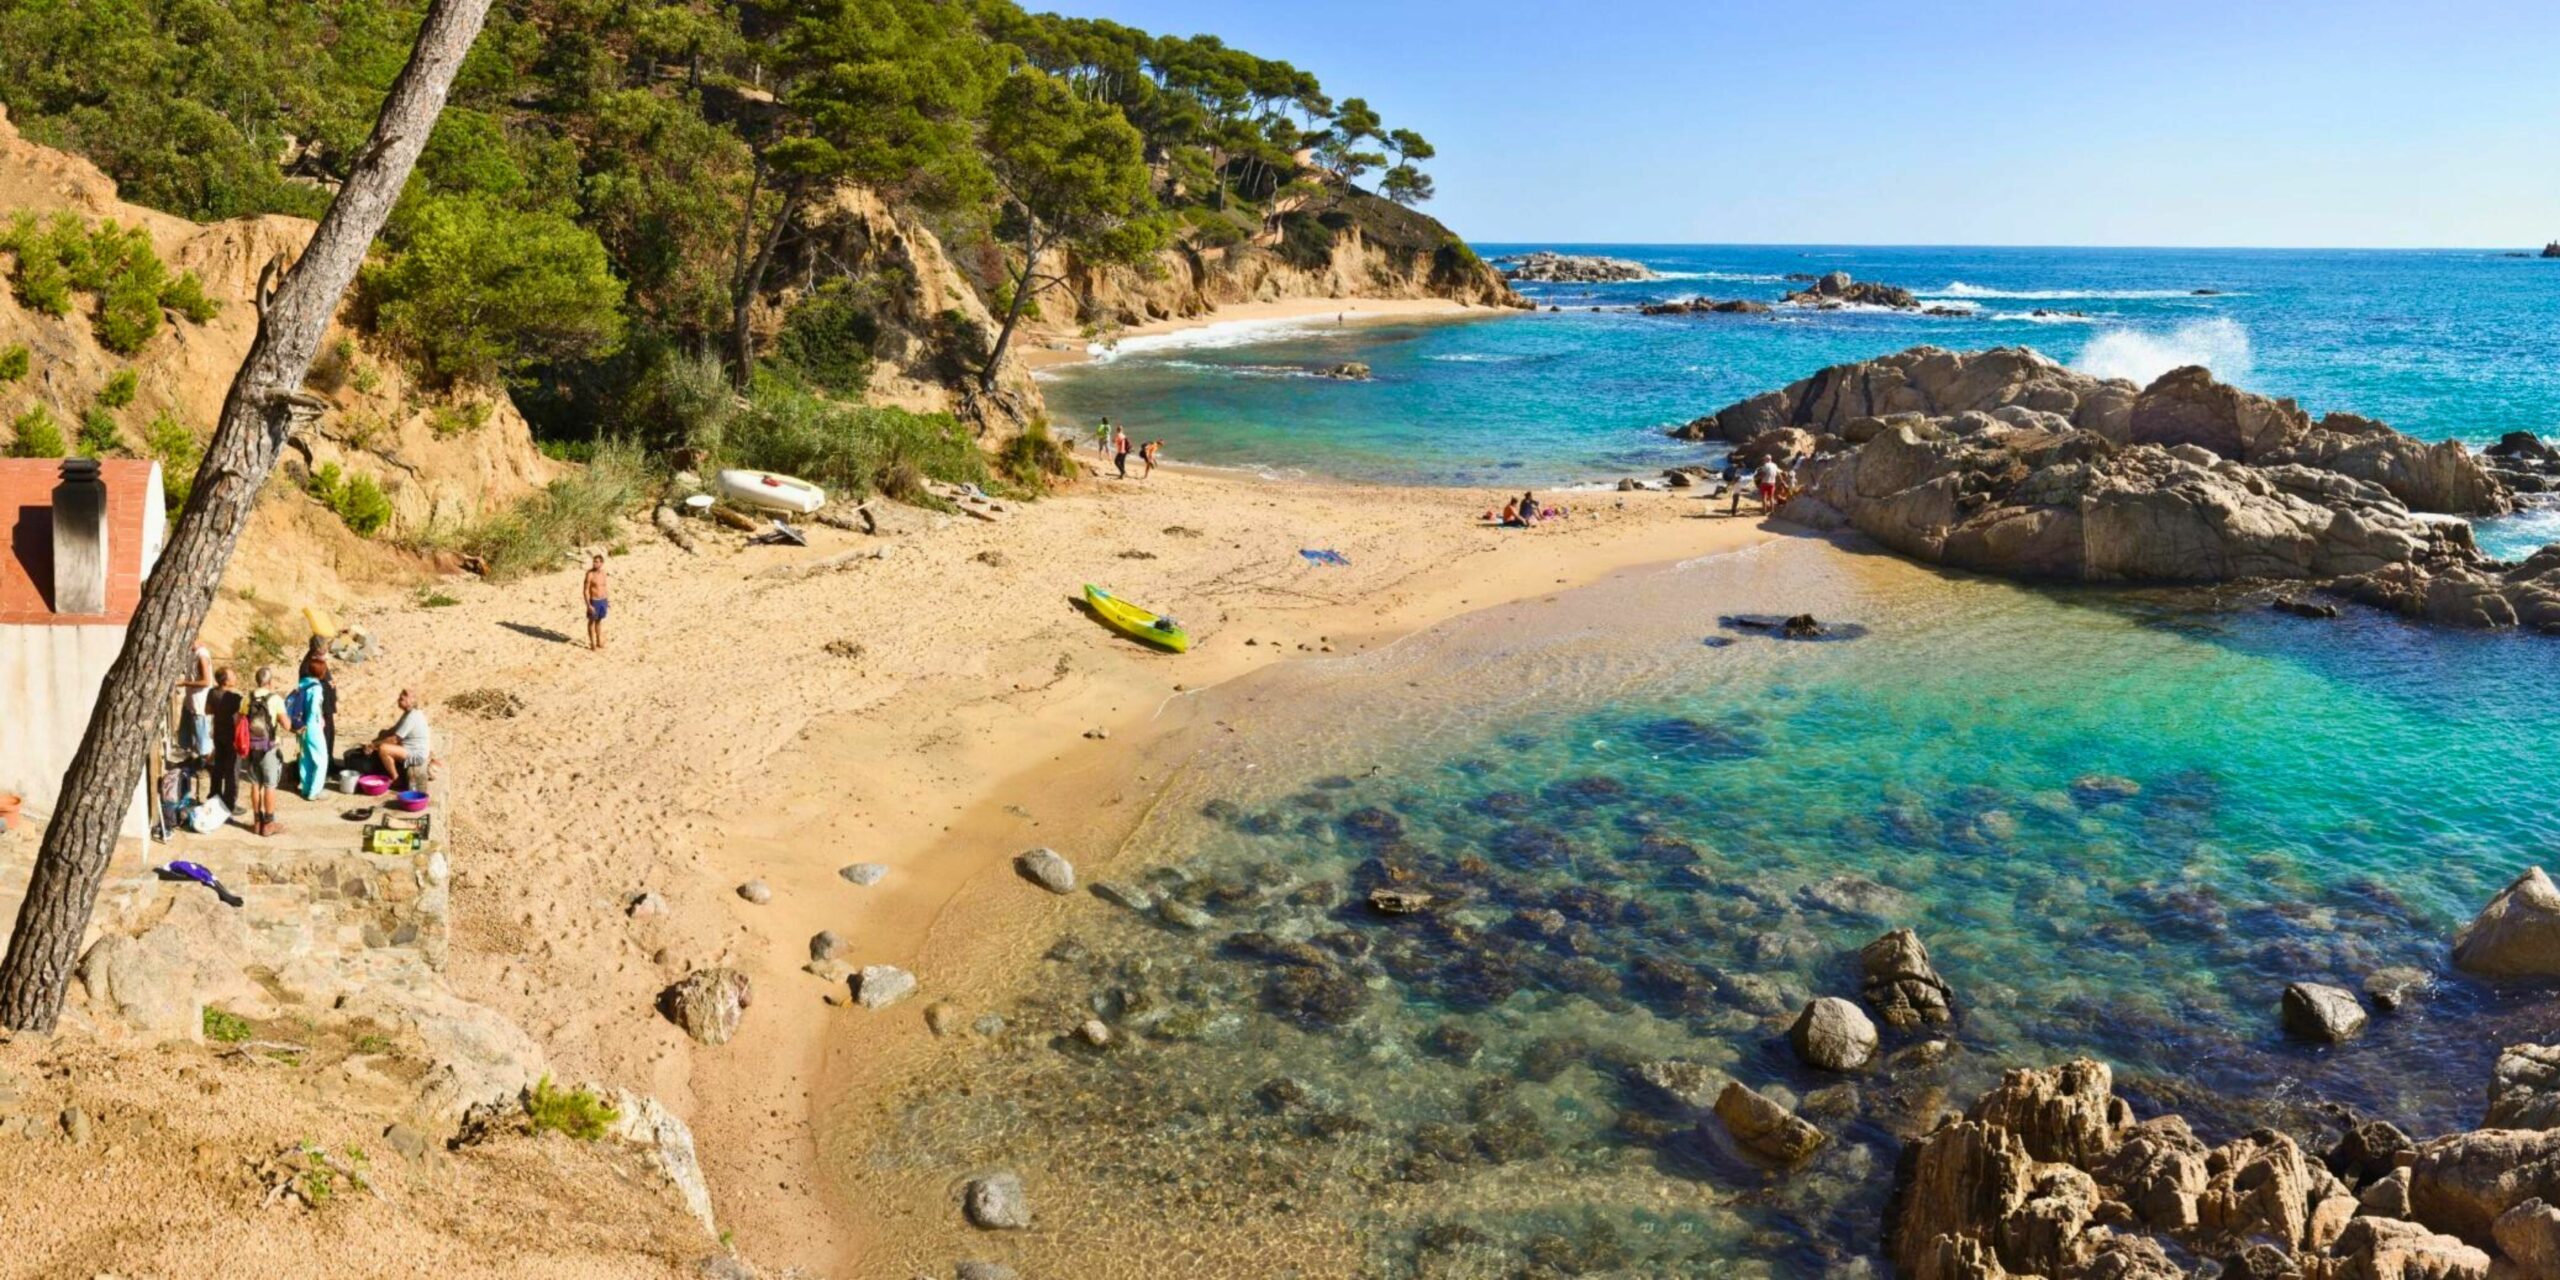 La crique de Palamos sur la Costa Brava de Catalogne